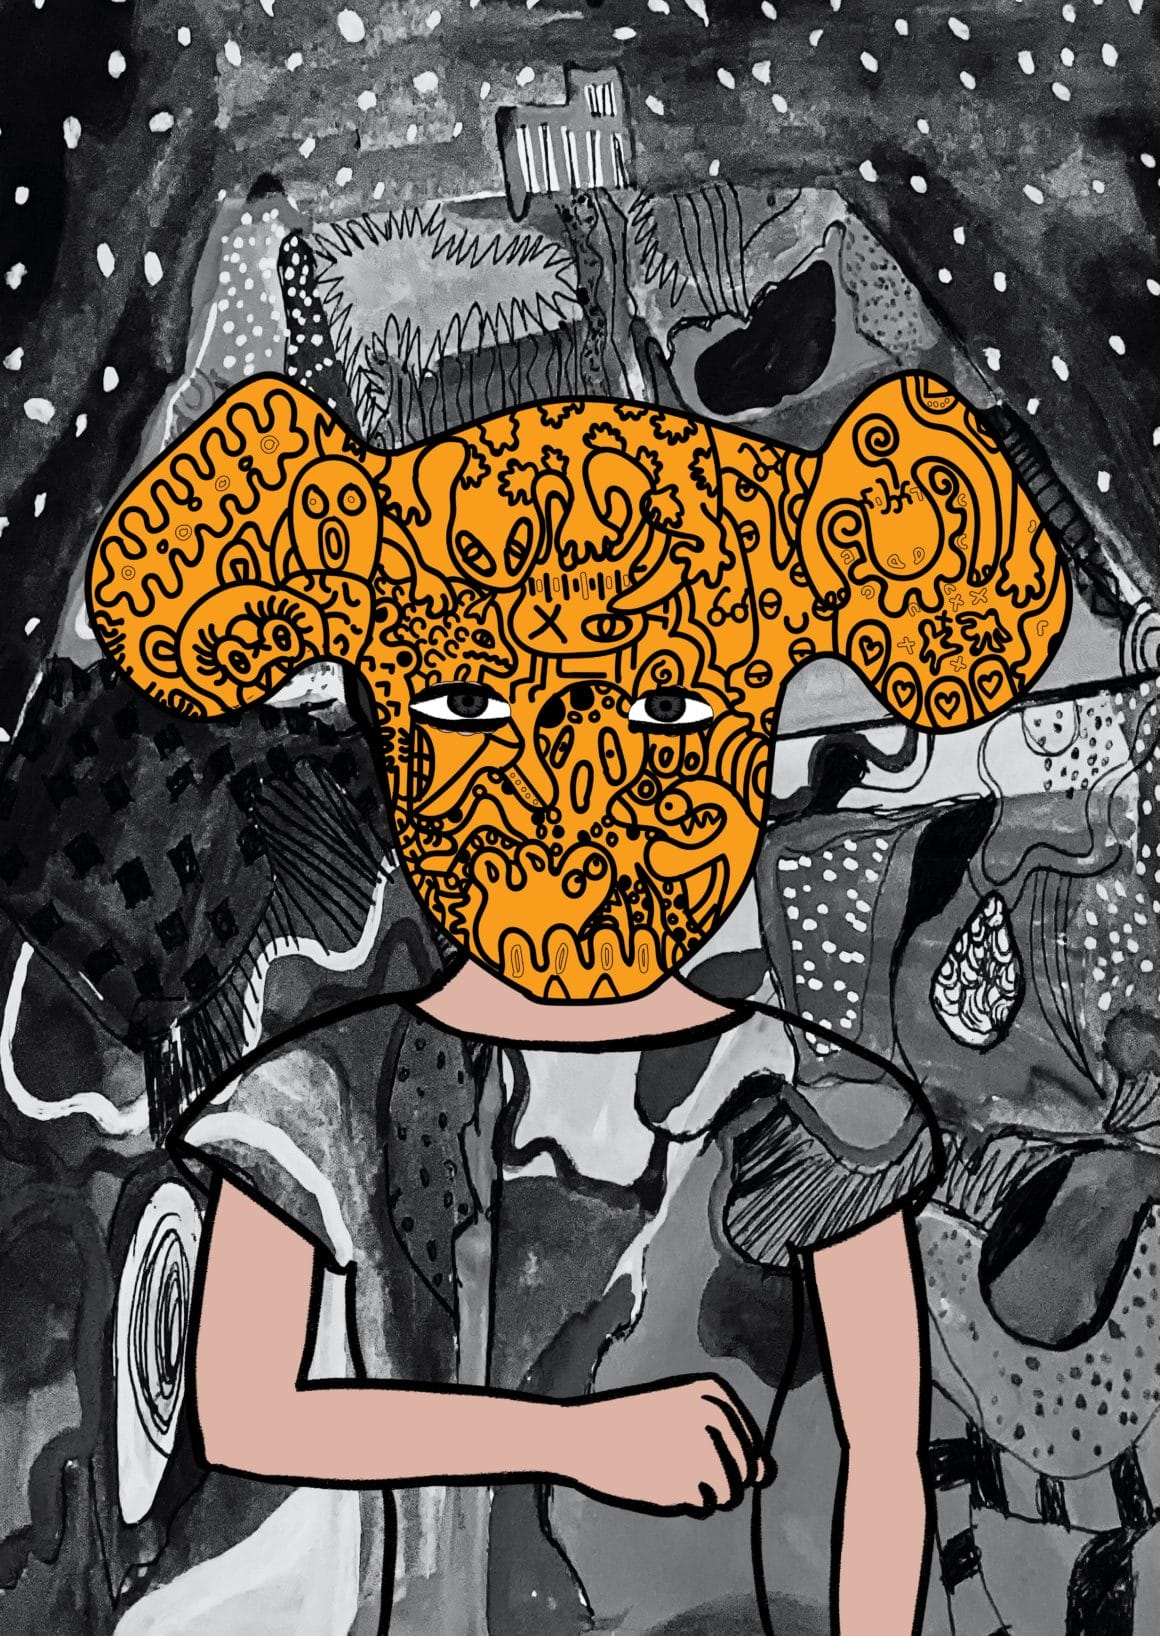 Le fond est rempli de motifs abstraits en noir et blanc, comme le tee shirt du personnage. Il porte un masque orange qui a de grandes oreilles.